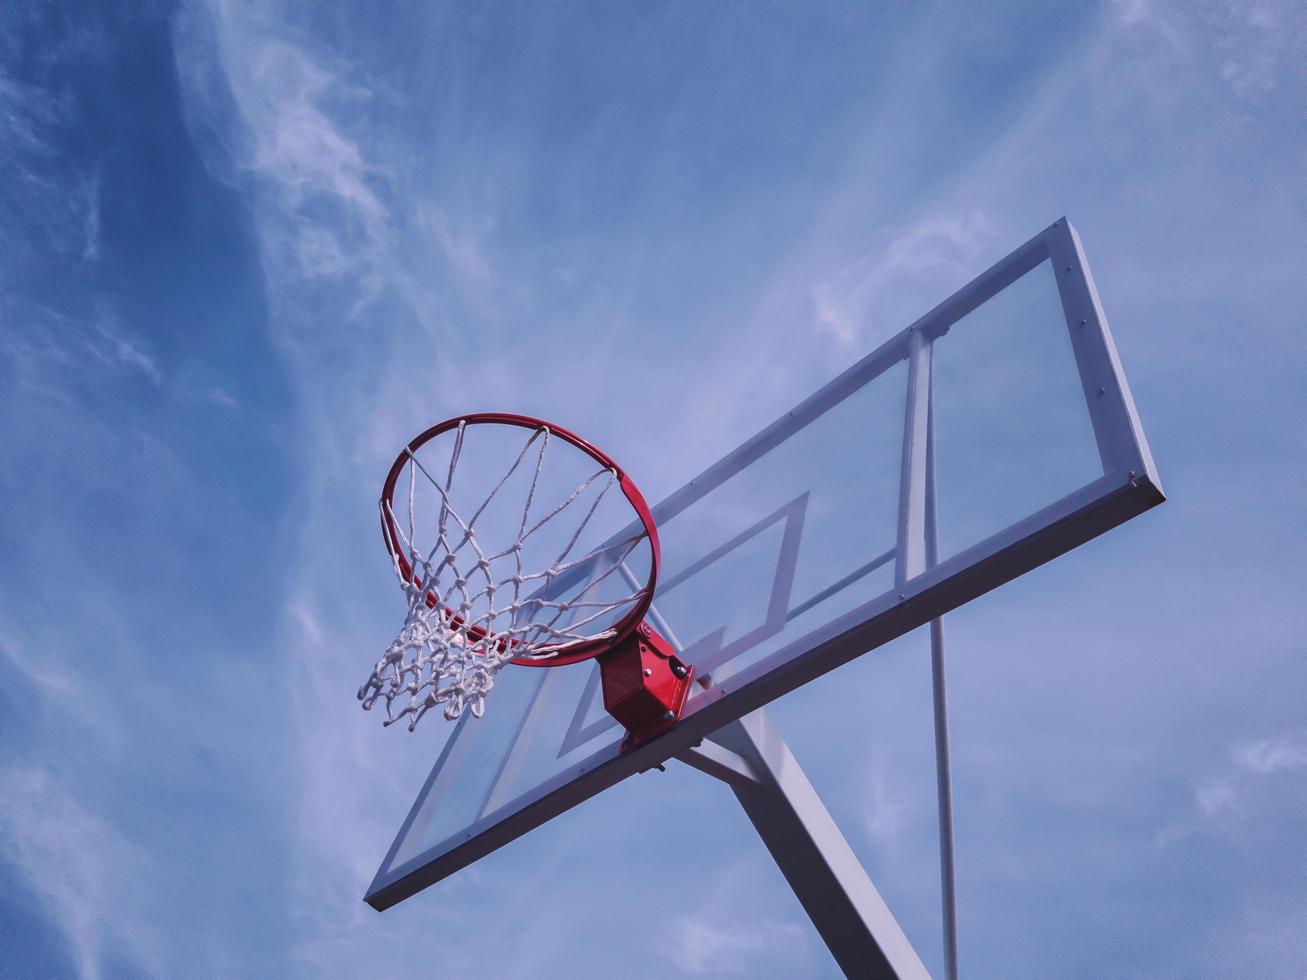 basketbalbord tegen de hemel. buitensport constructie. foto